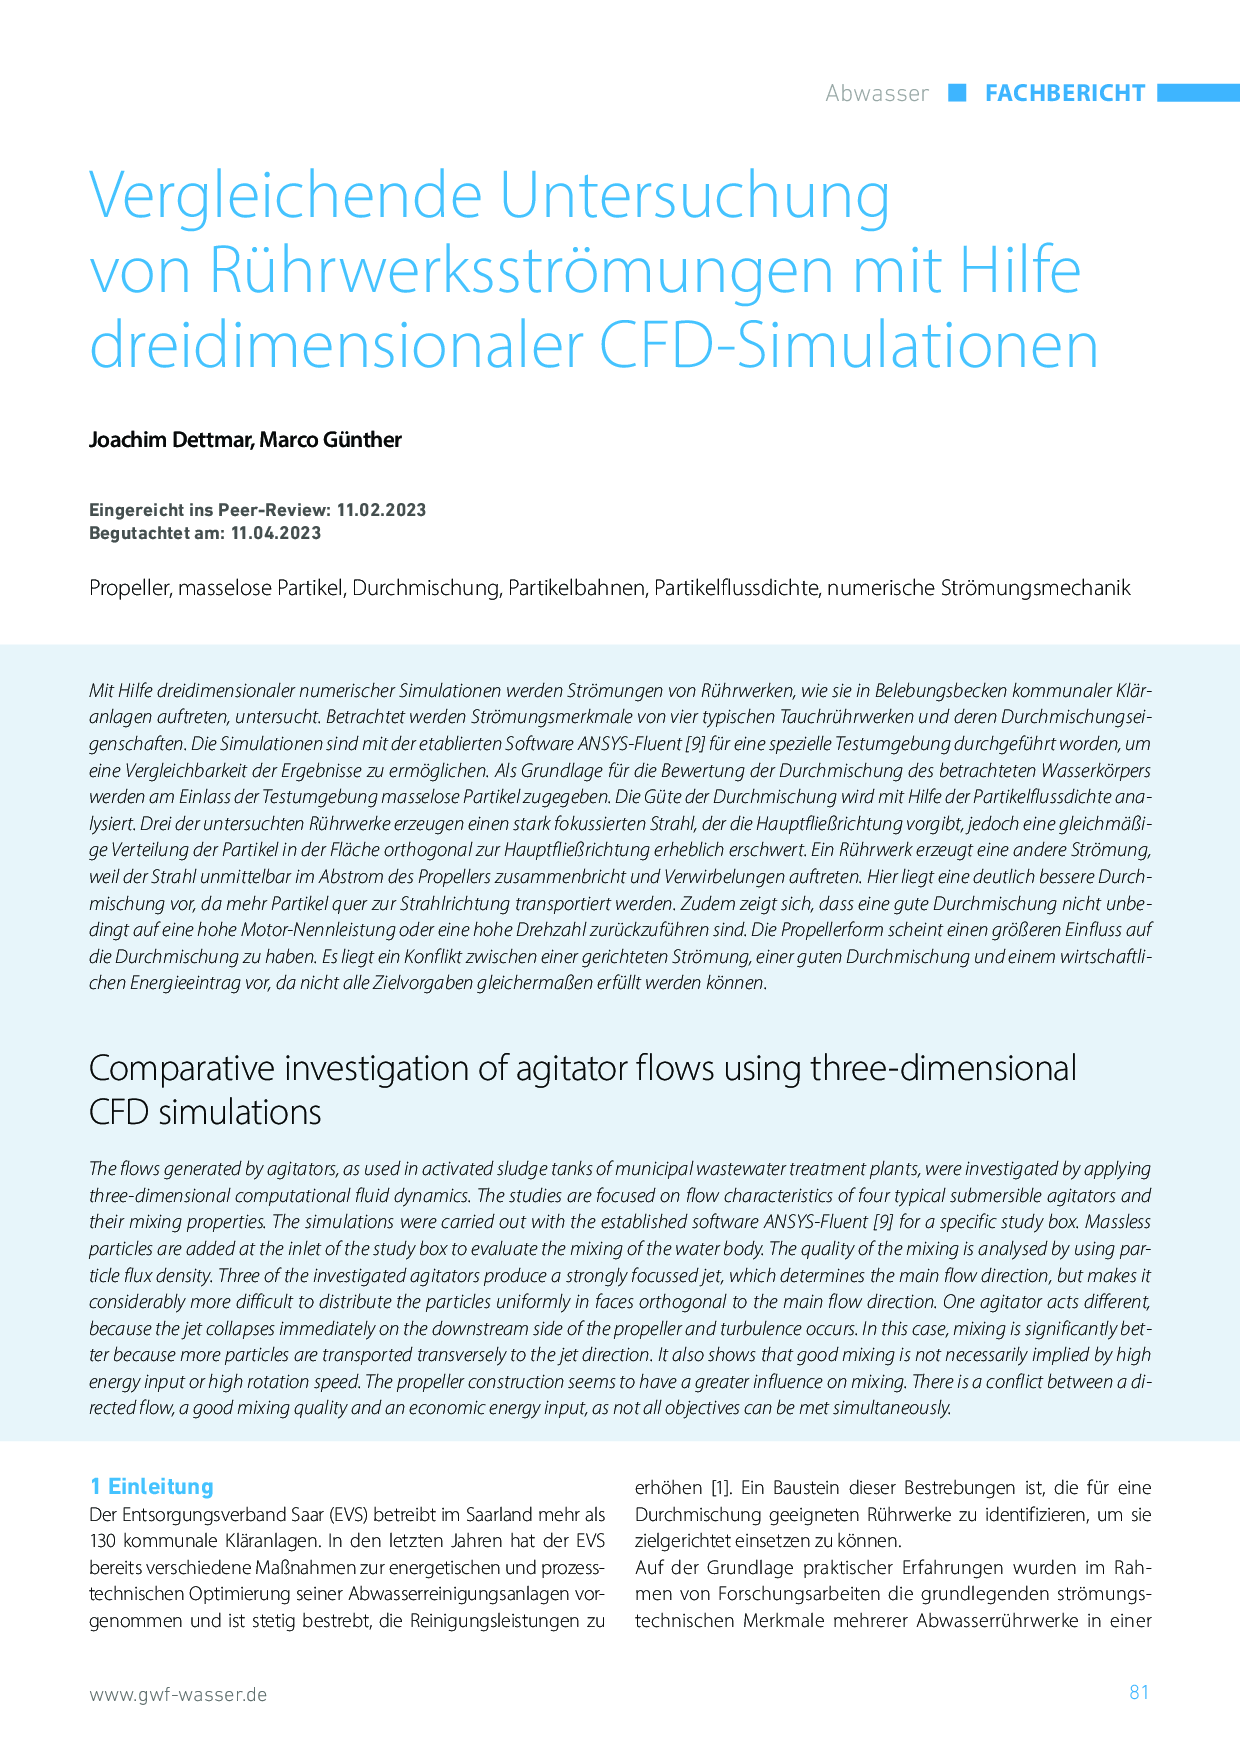 Vergleichende Untersuchung von Rührwerksströmungen mit Hilfe dreidimensionaler CFD-Simulationen